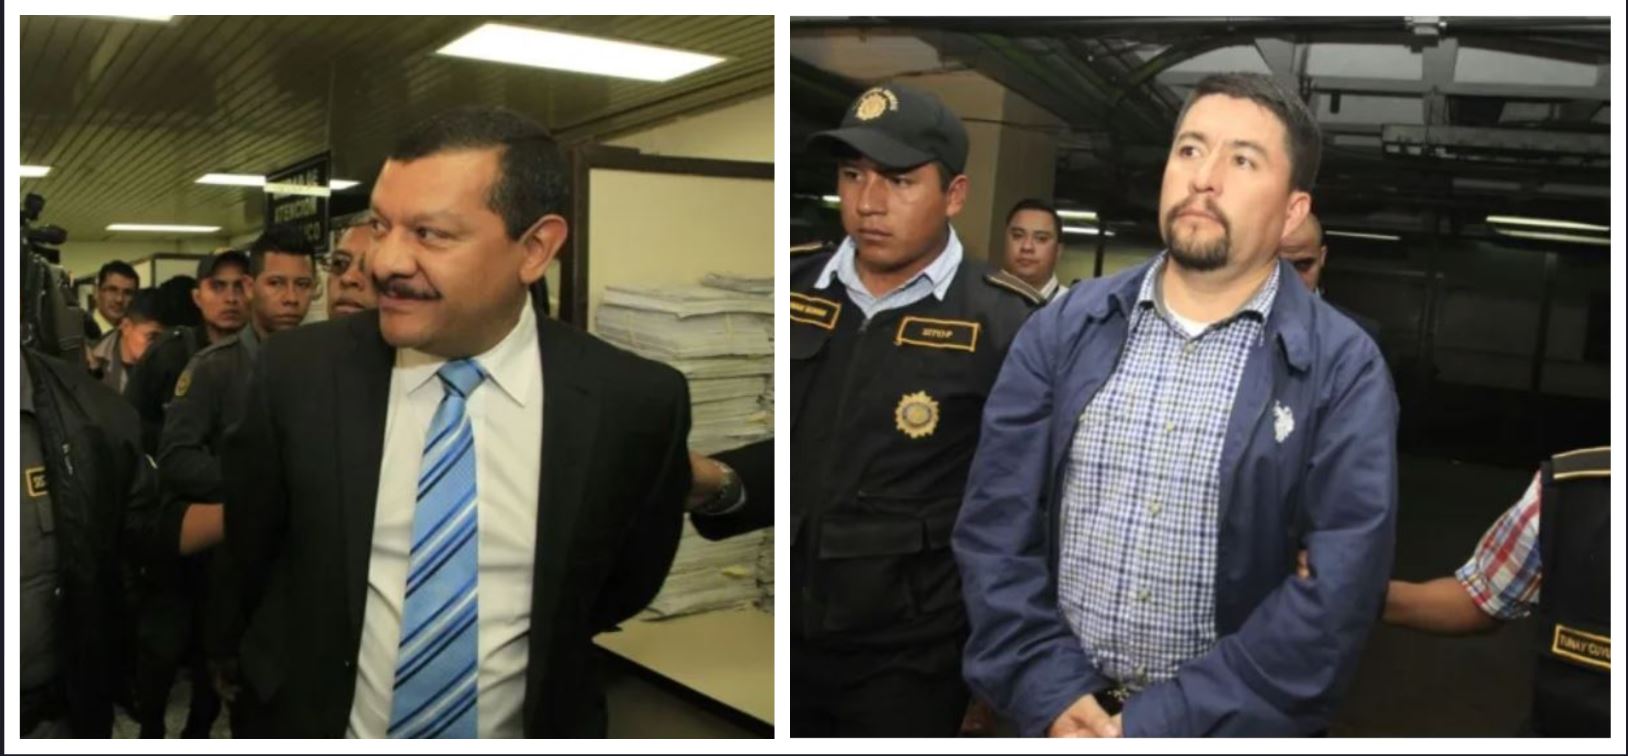 Los exalcaldes Antonio Coro y Víctor Albarizaes enfrentarán juicio por el Caso Cambray. (Foto: Hemeroteca PL)